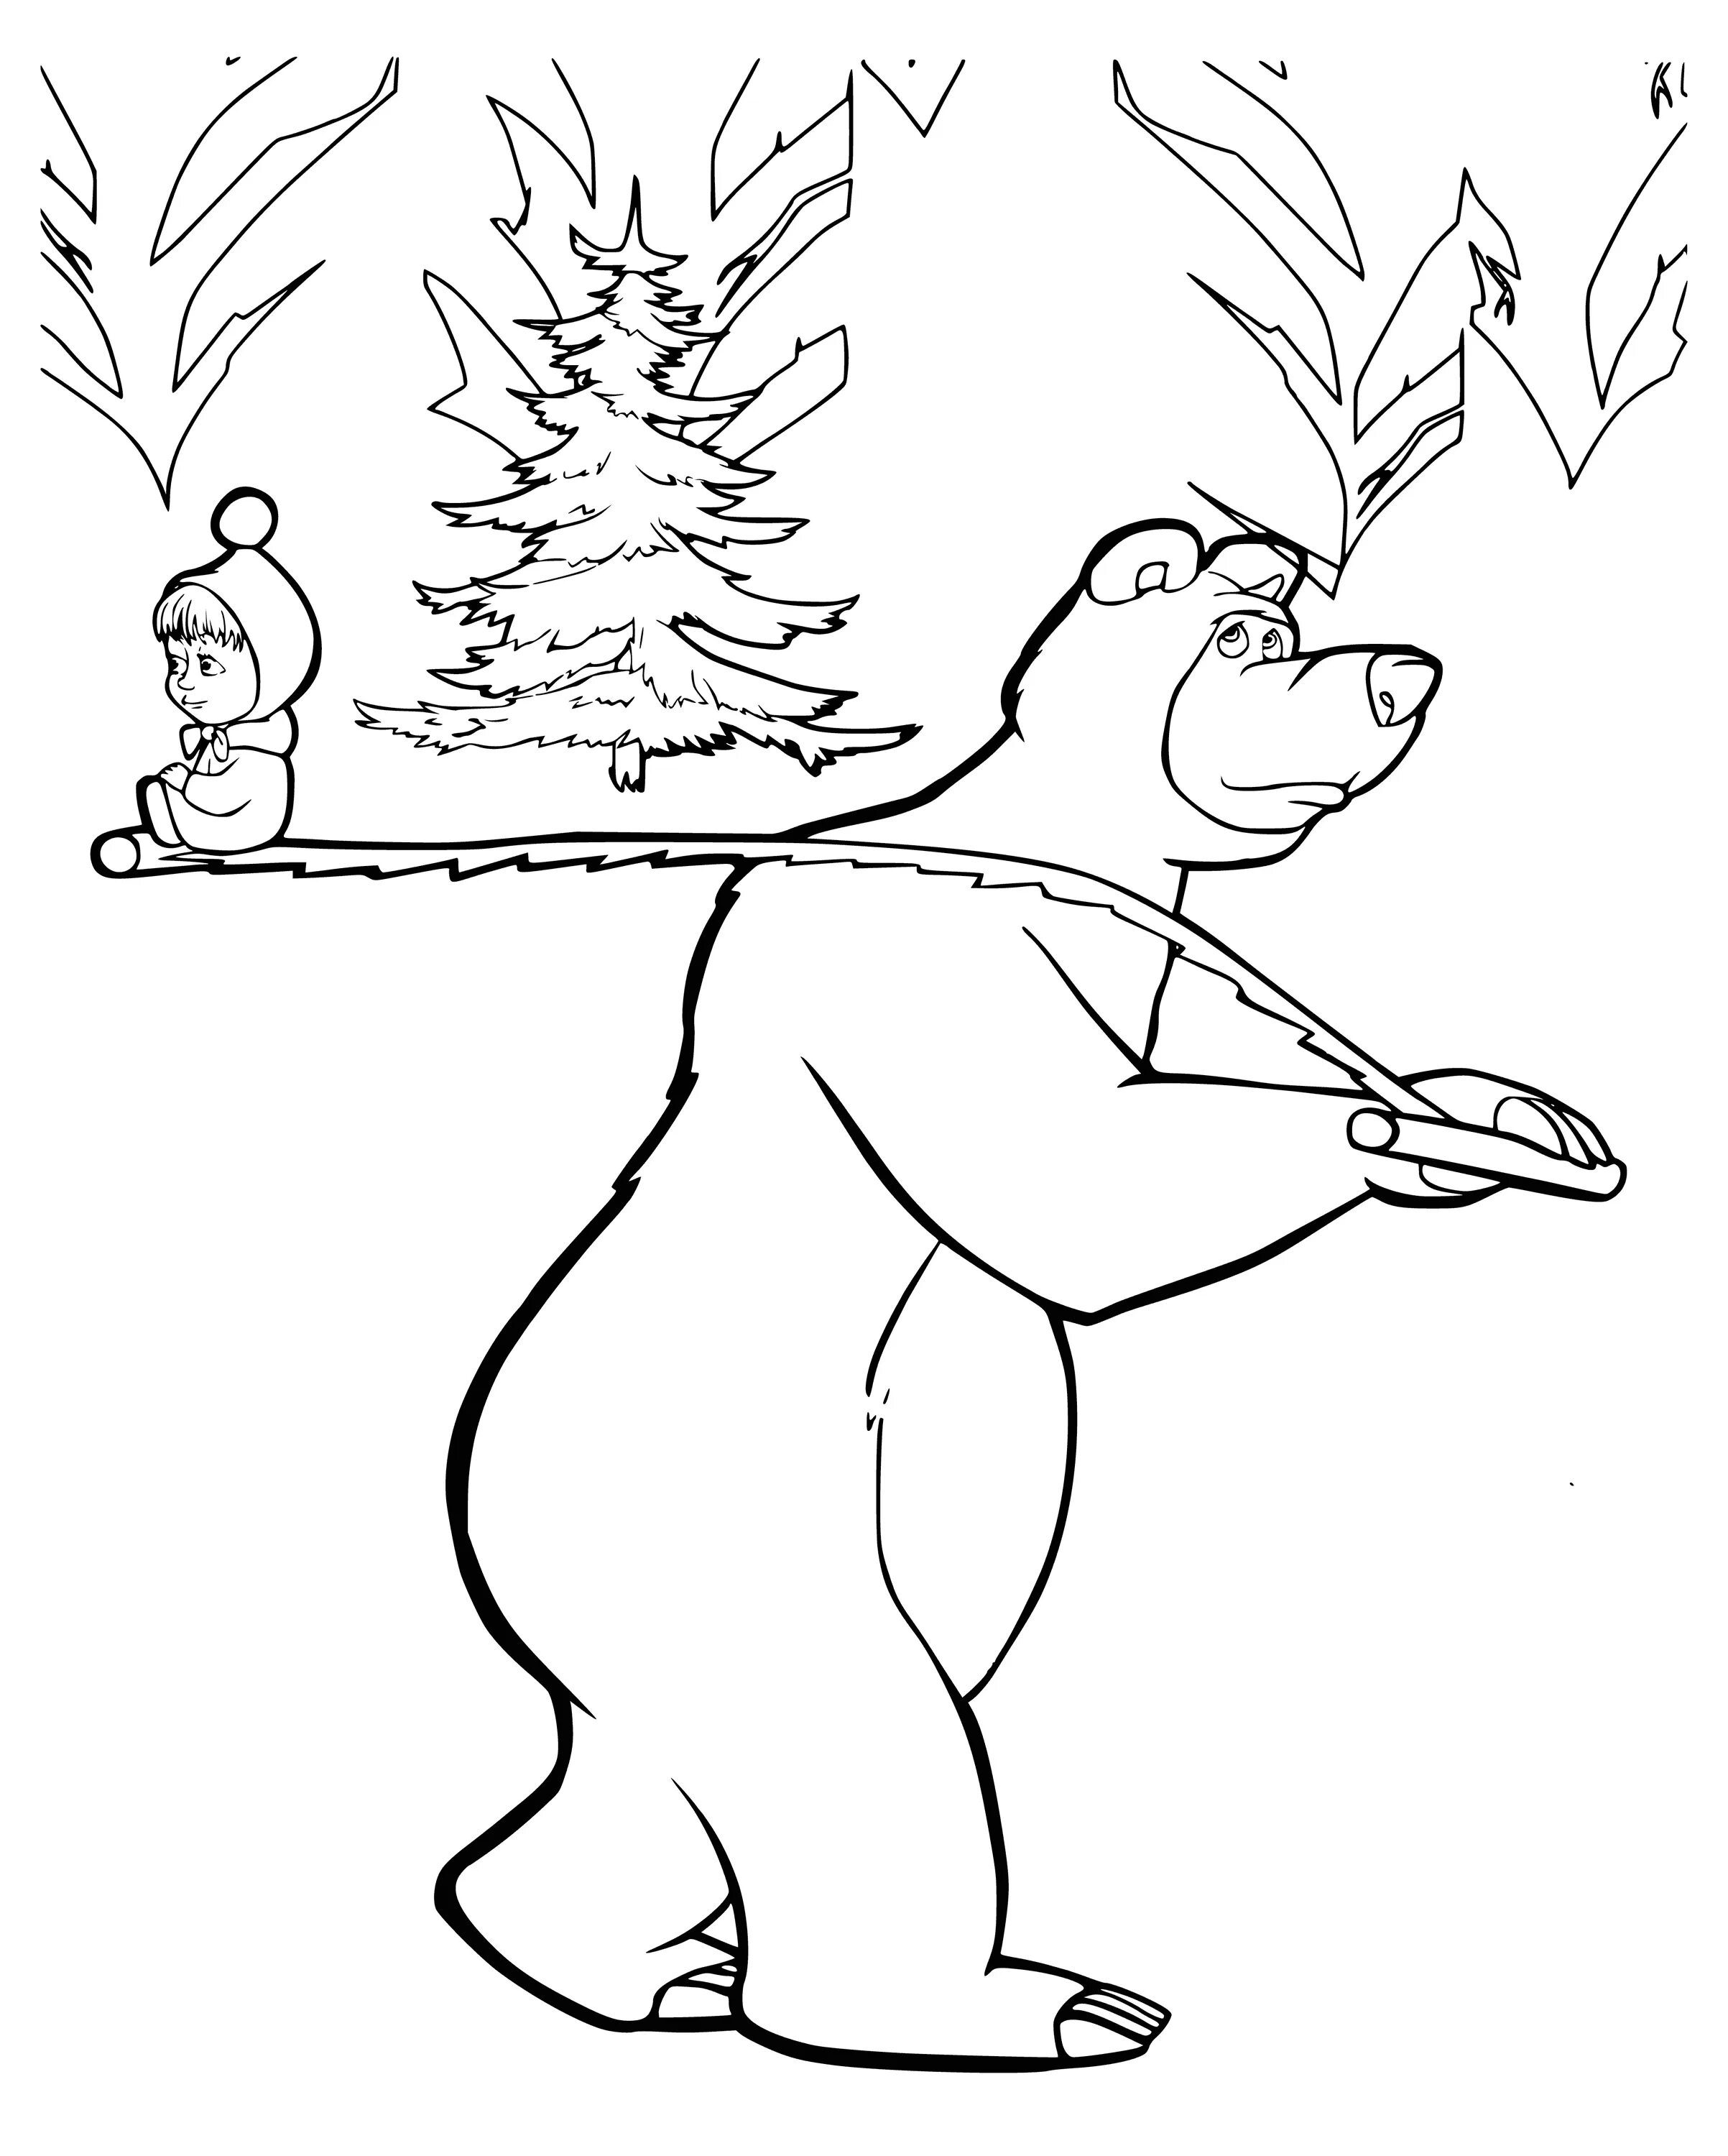 Разукрашку Маша и медведь. Маша и медведь рисунок раскраска. Раскраски для детей из мультфильмов Маша и медведь. Раскраски герои мультфильмов Маша и медведь. Раскраска маша и медведь 2